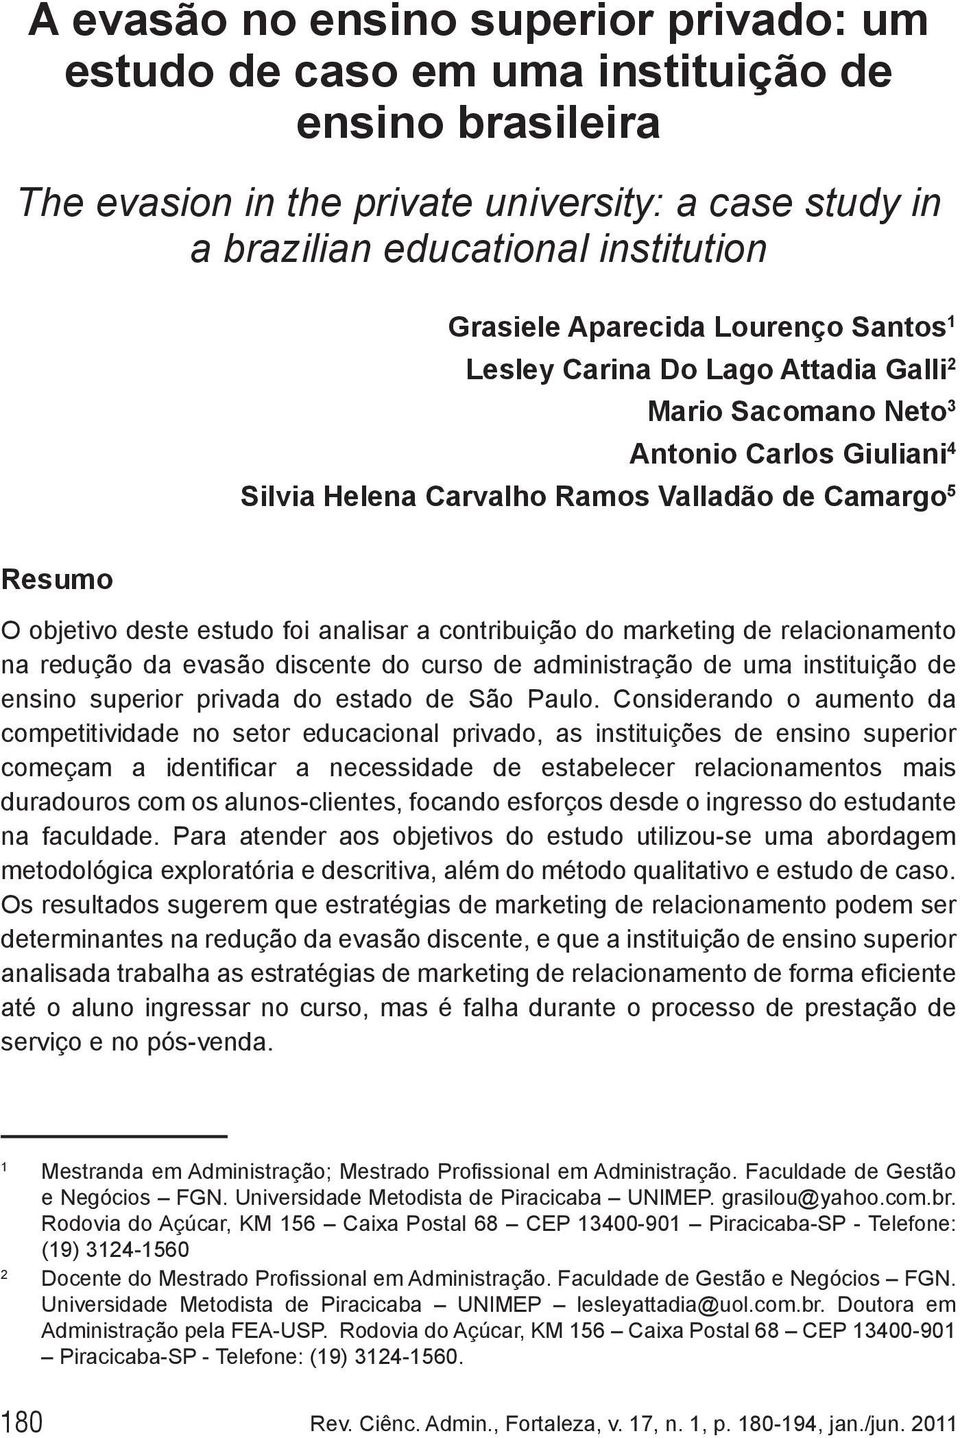 analisar a contribuição do marketing de relacionamento na redução da evasão discente do curso de administração de uma instituição de ensino superior privada do estado de São Paulo.